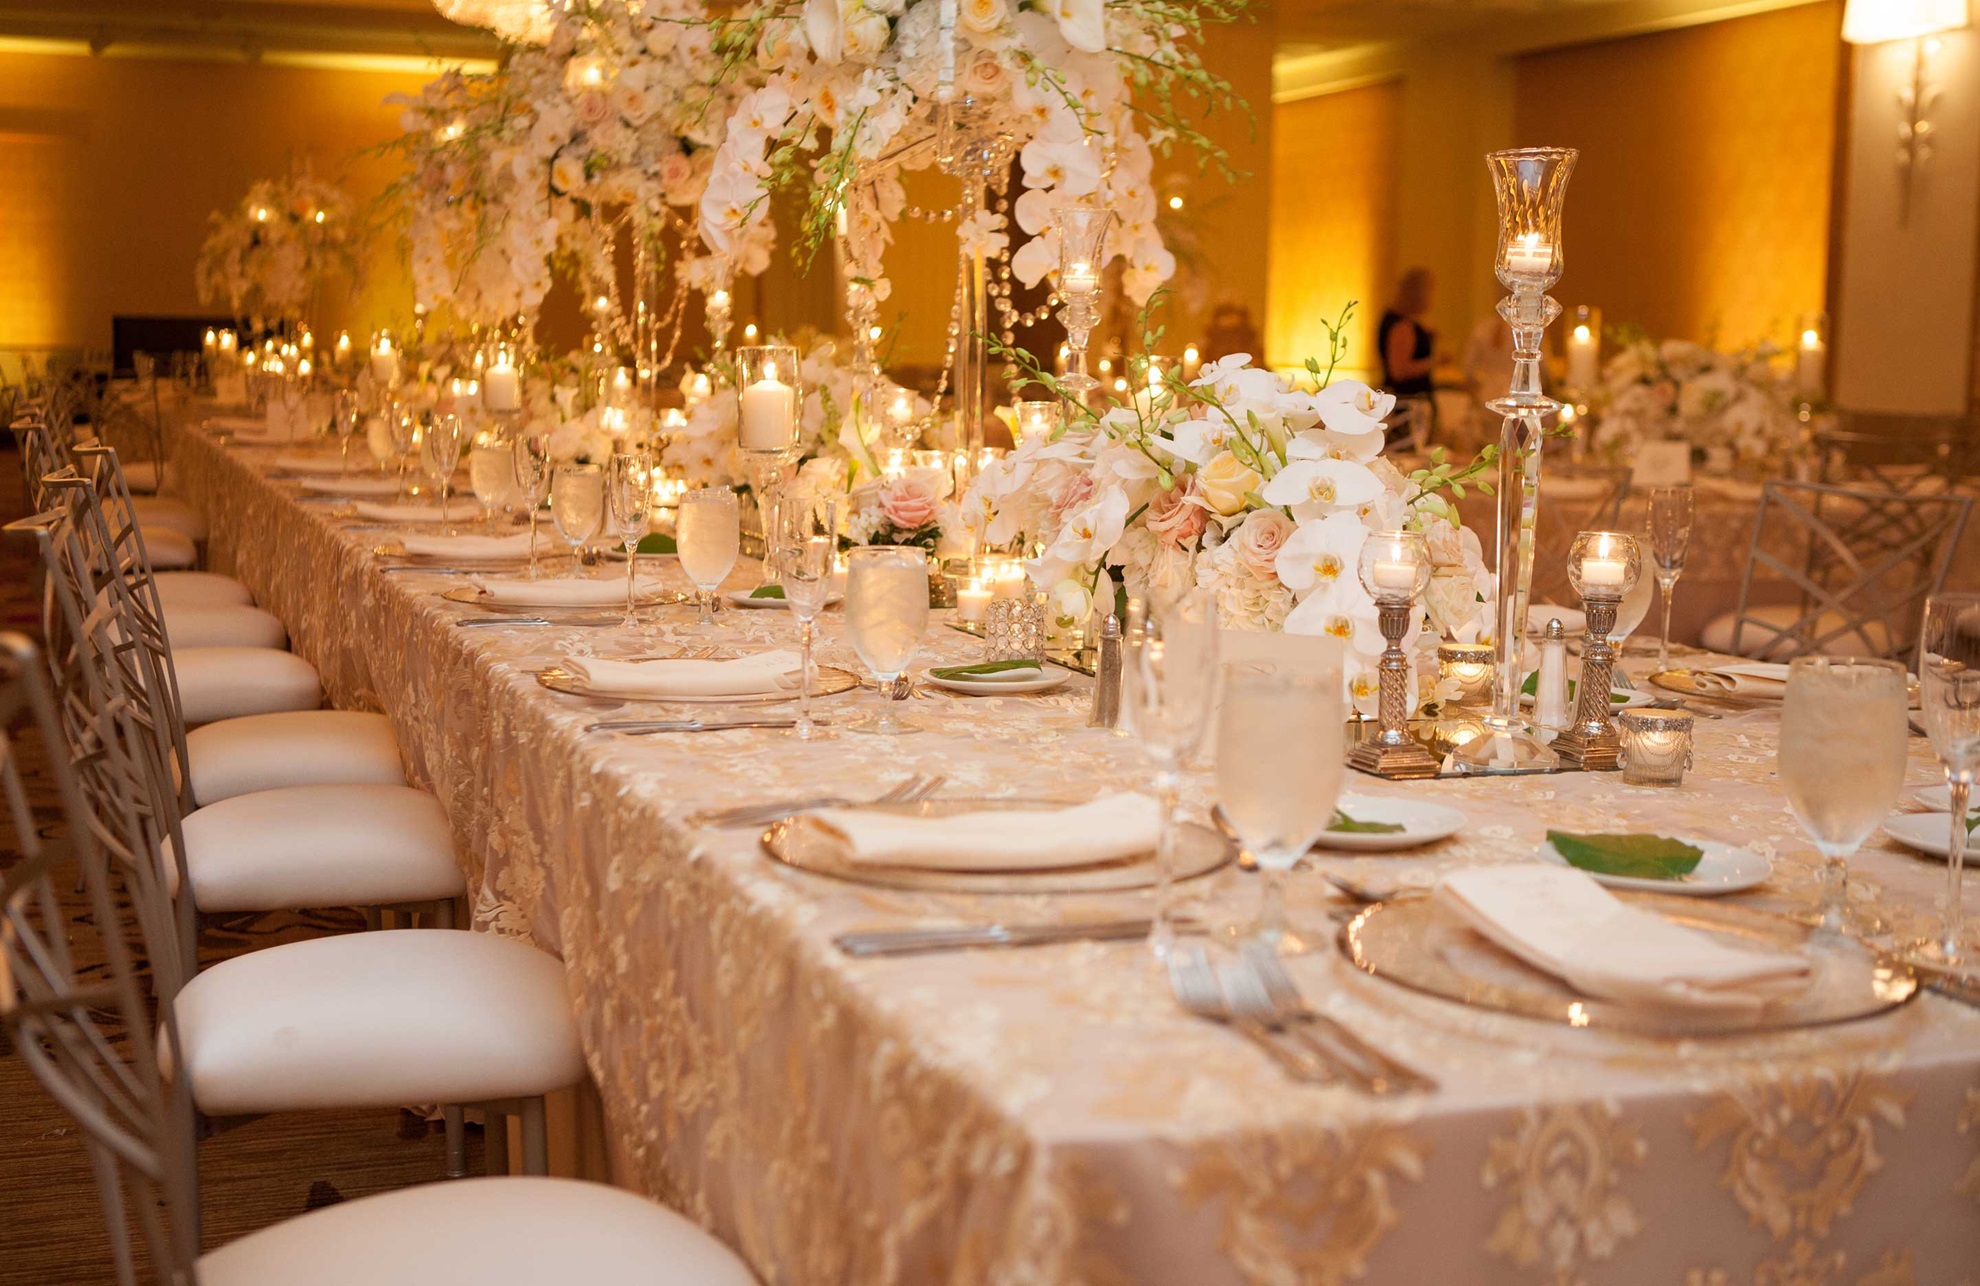 Omni William Penn Hotel wedding banquet table.